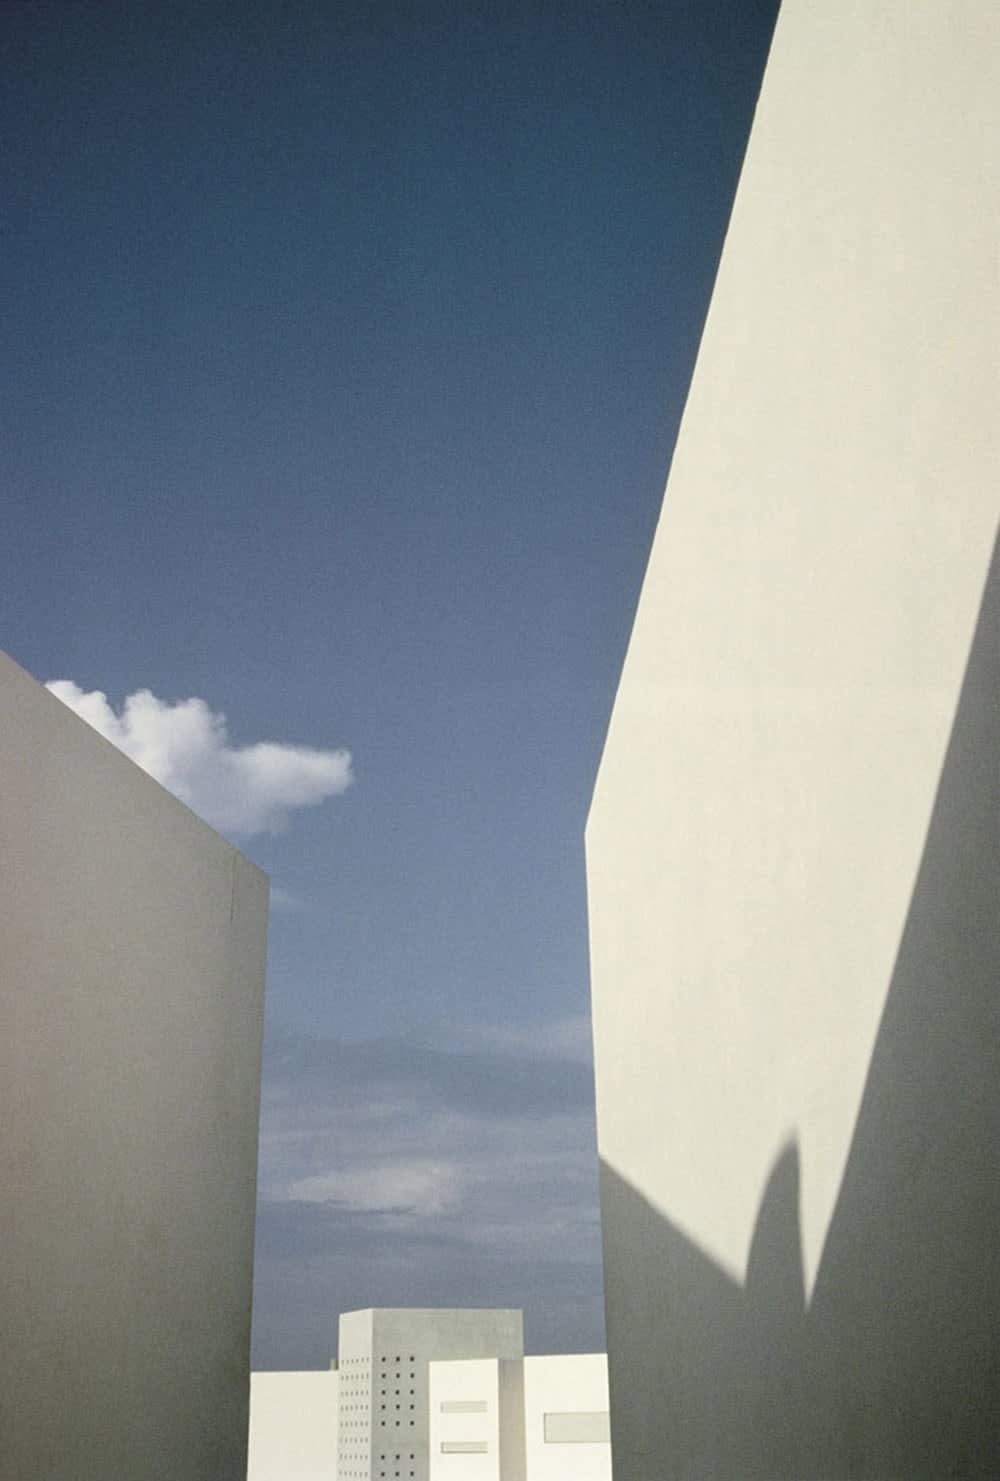 Franco Fontana, Ibiza 'a', 1992